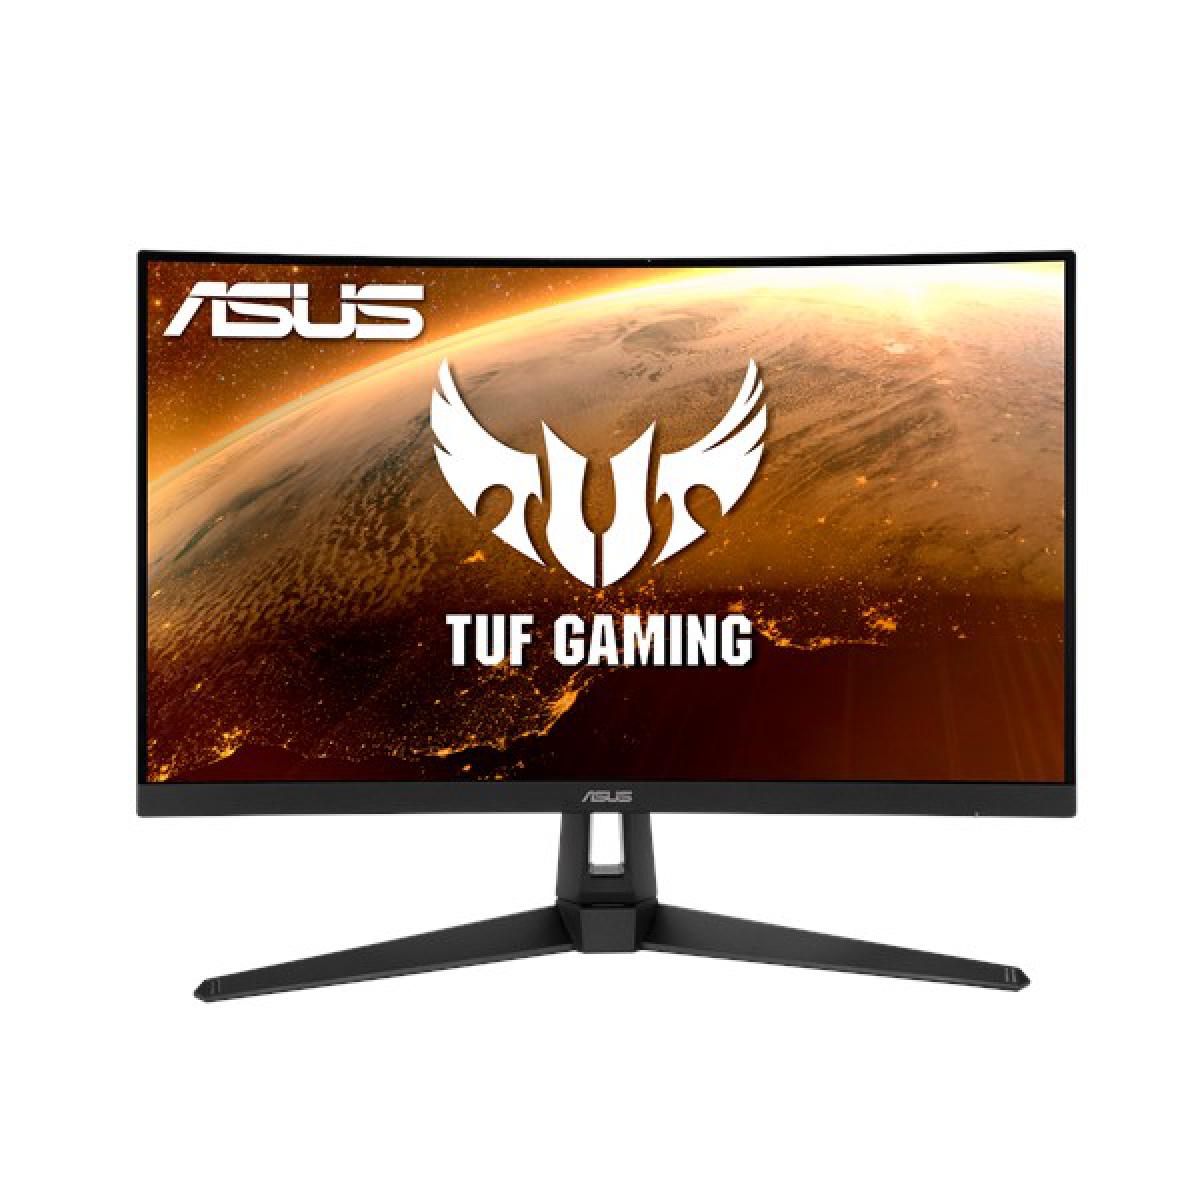 Asus - ASUS TUF Gaming VG27VH1B 27" LED Full HD 1 Ms Noir - Moniteur PC